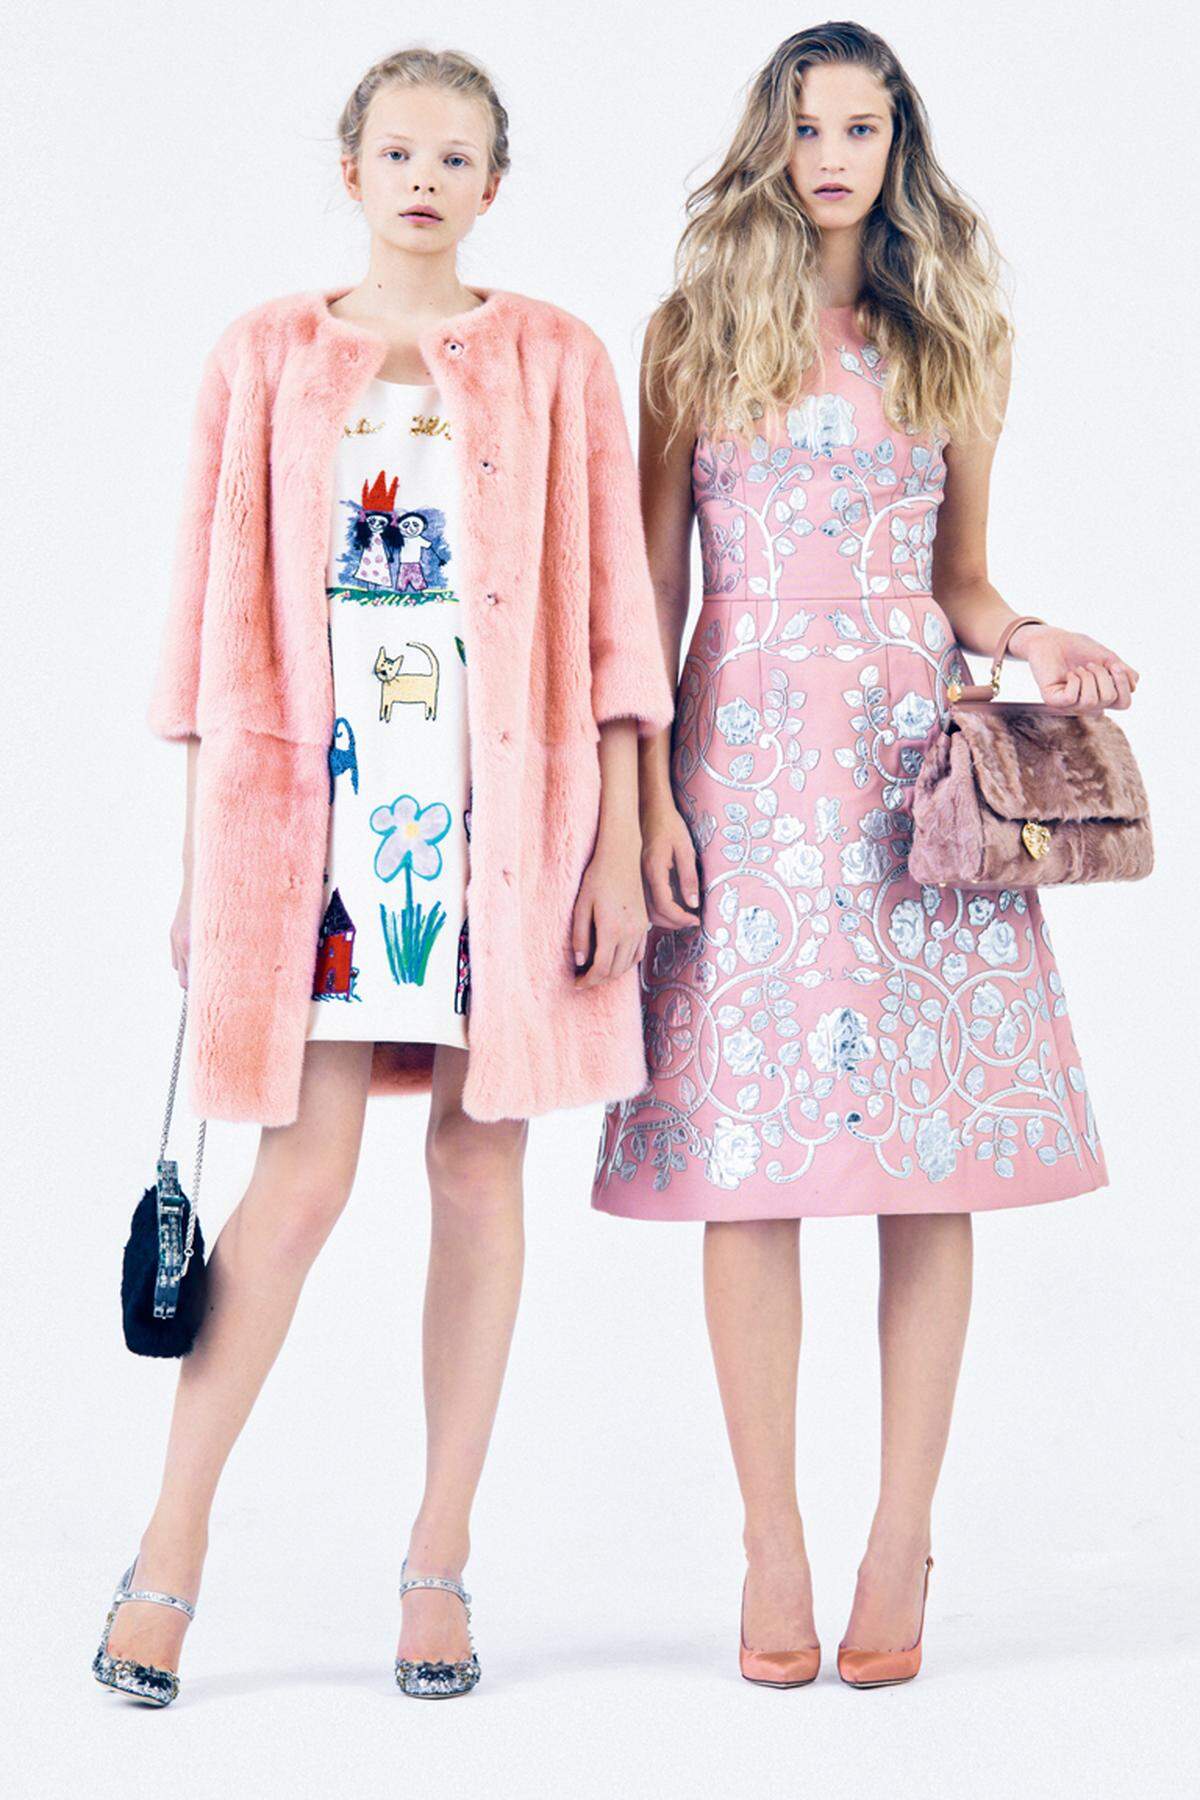 Dolce &amp; GabbanaLinks: Nerzmantel, Kleid in A-Linie, bestickt mit Applikationen von Kinderzeichnungen, Pumps mit Pailletten bestickt und Tasche. Rechts: Kleid mit Lederapplikationen, Tasche und Pumps.